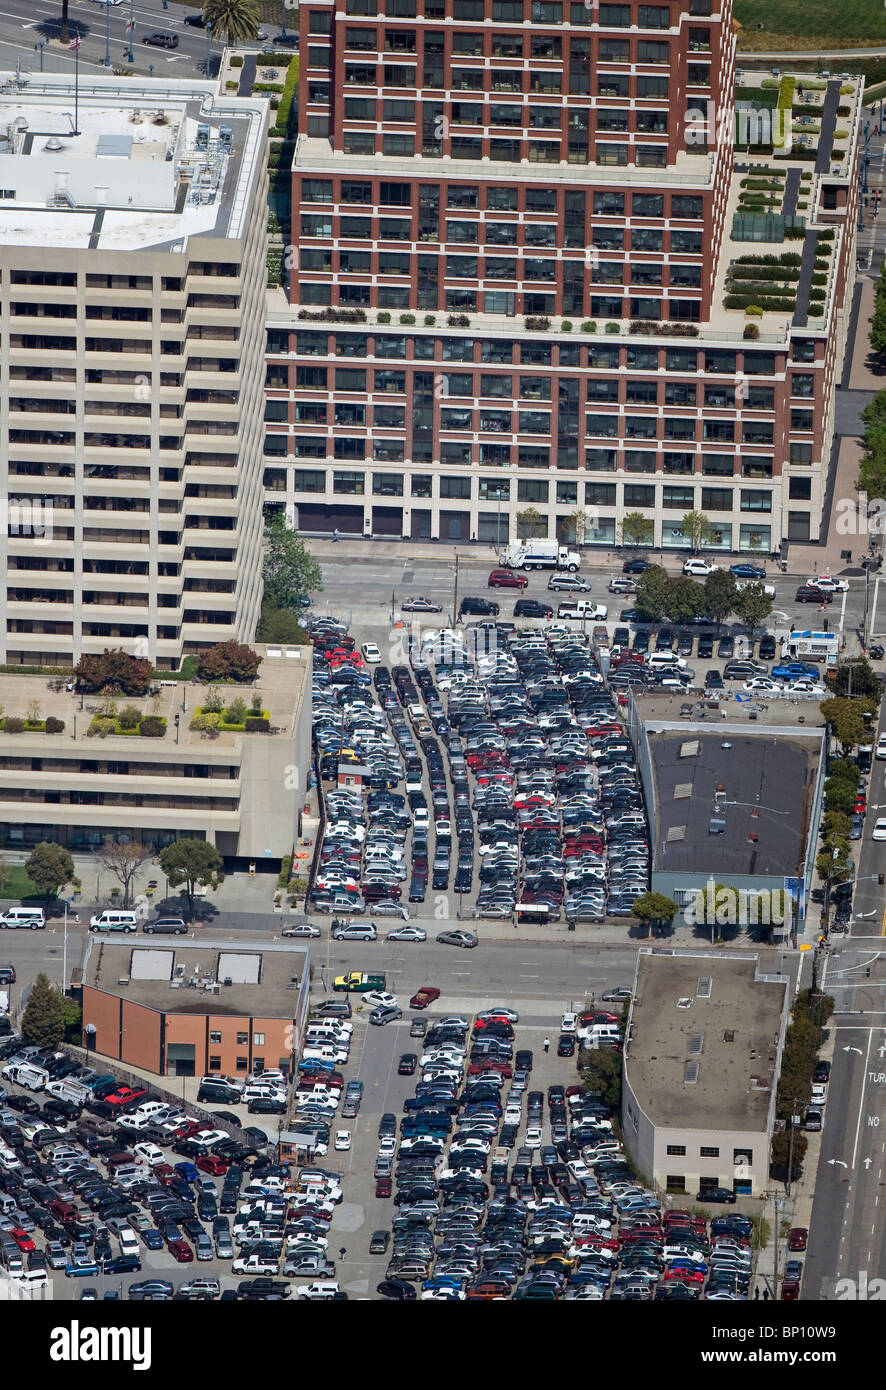 Vue aérienne au-dessus du parking voiture Centre ville de San Francisco, Californie Banque D'Images